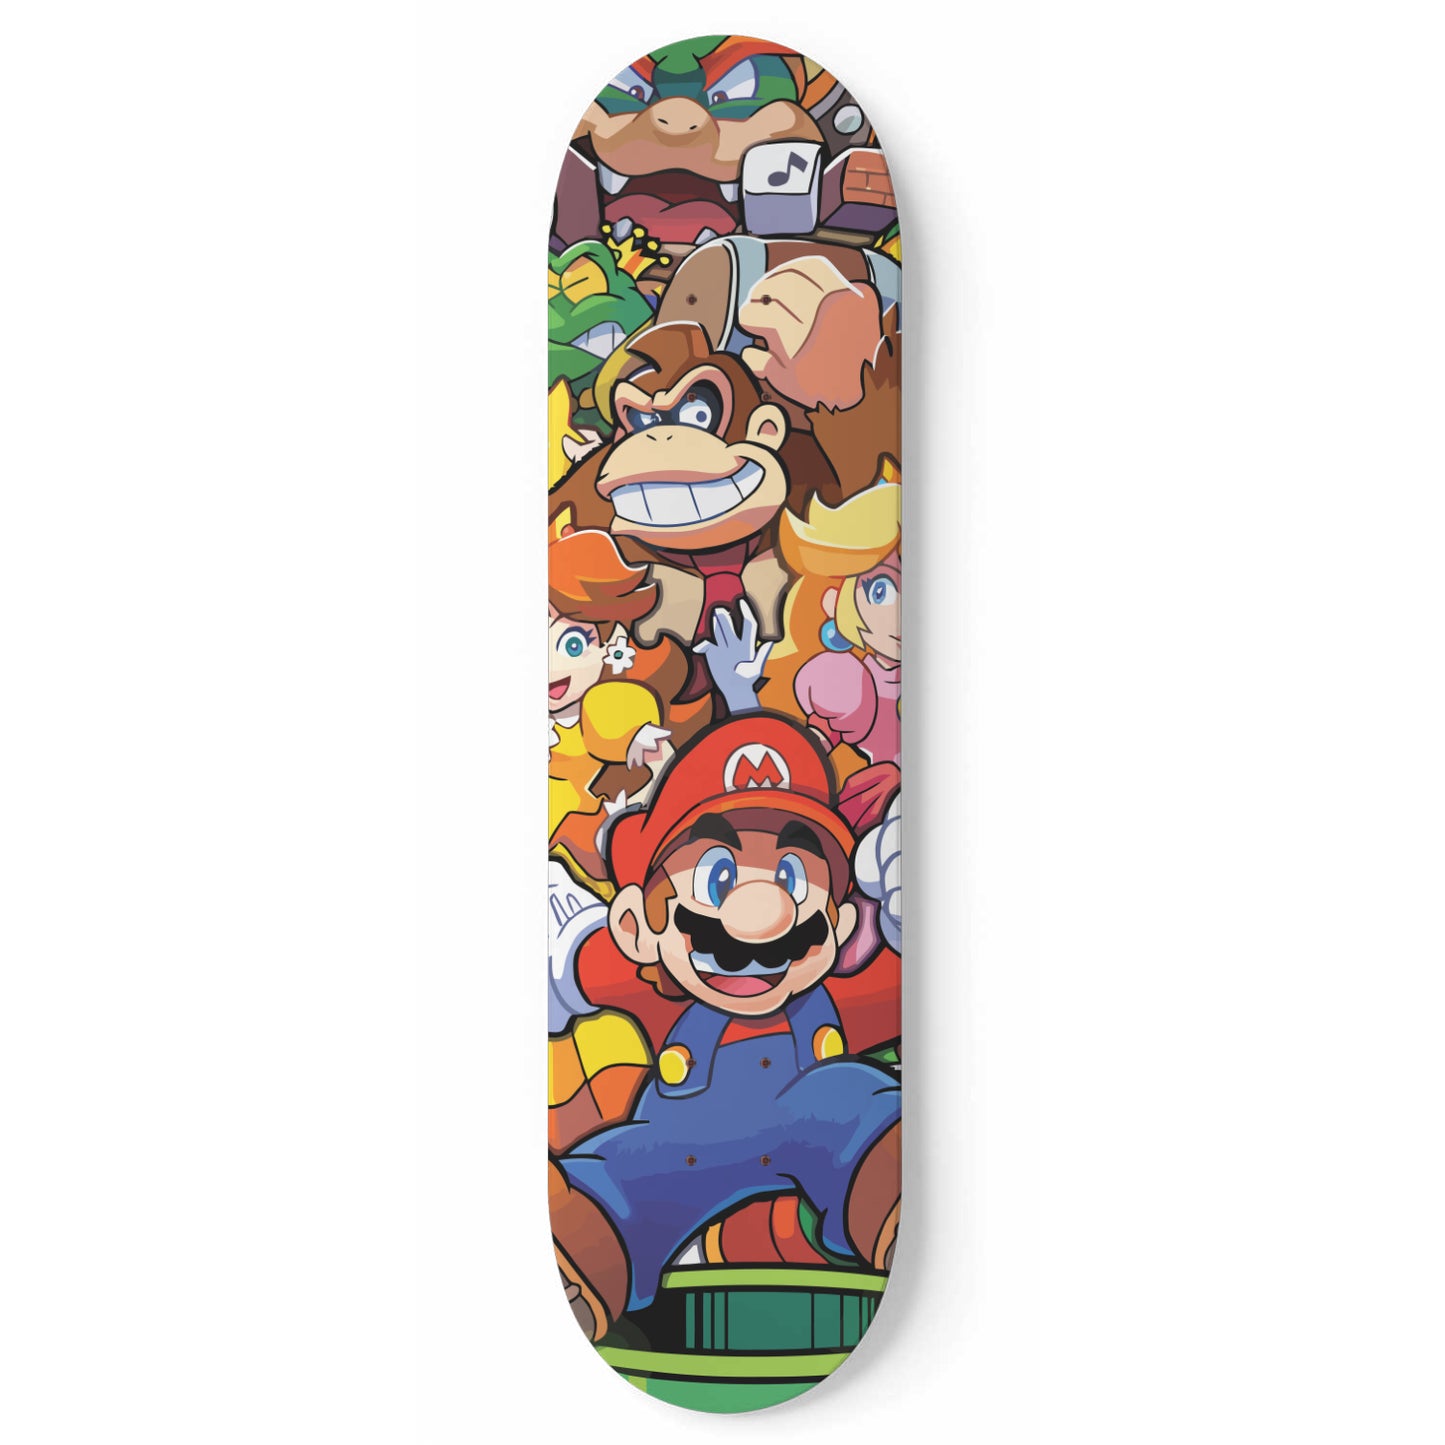 Super Cute Game Characters - Skateboard Wall Art